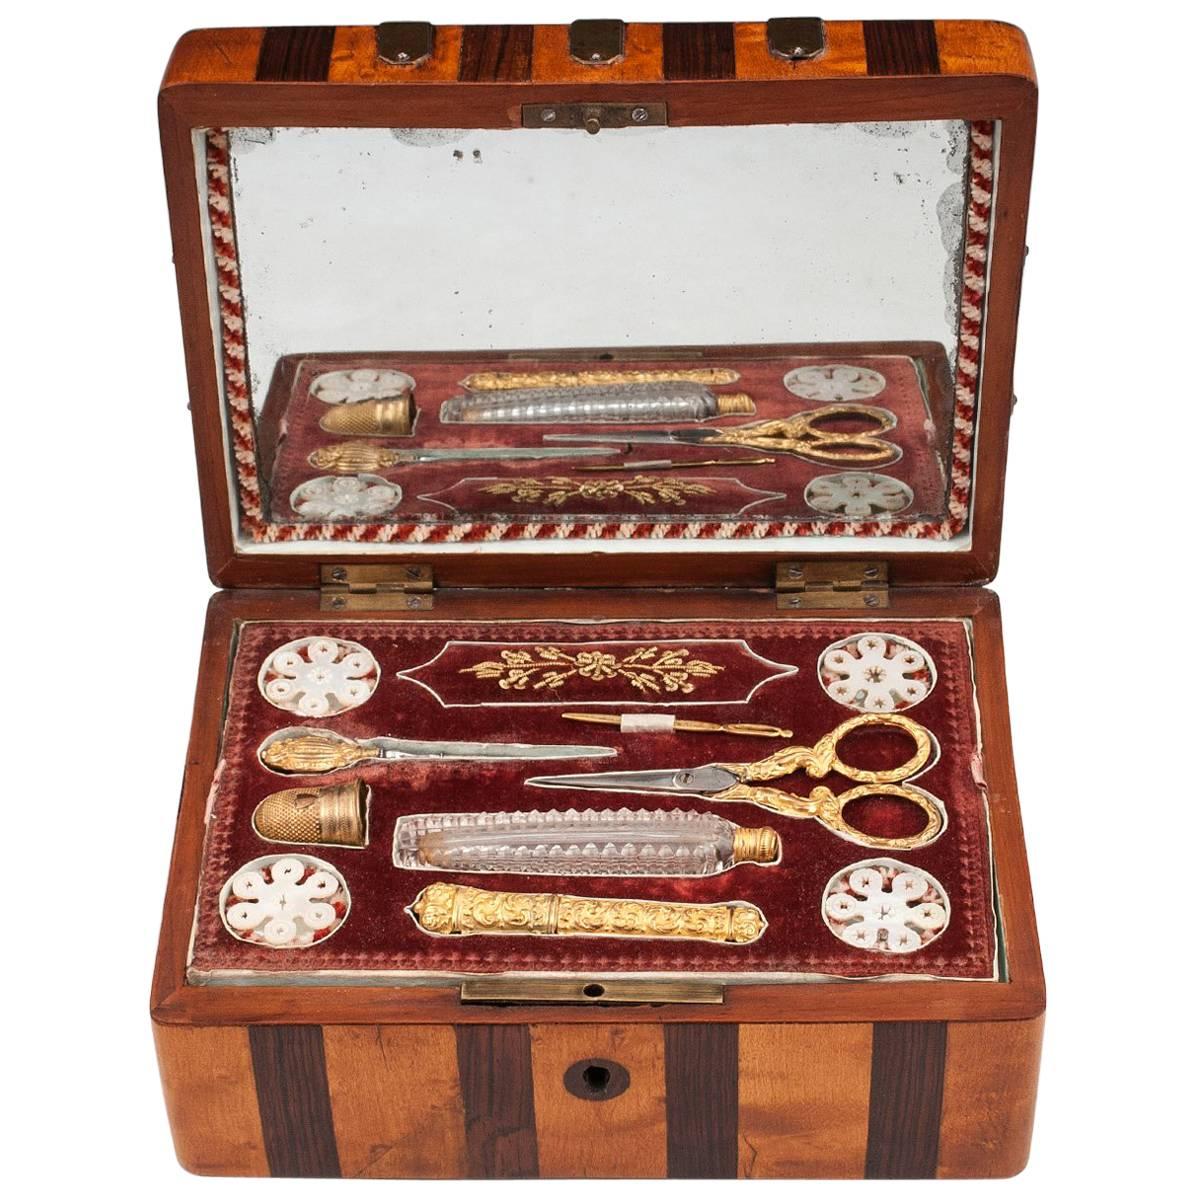 Antique Maple and Mahogany Palais Royal Sewing Box, 19th Century